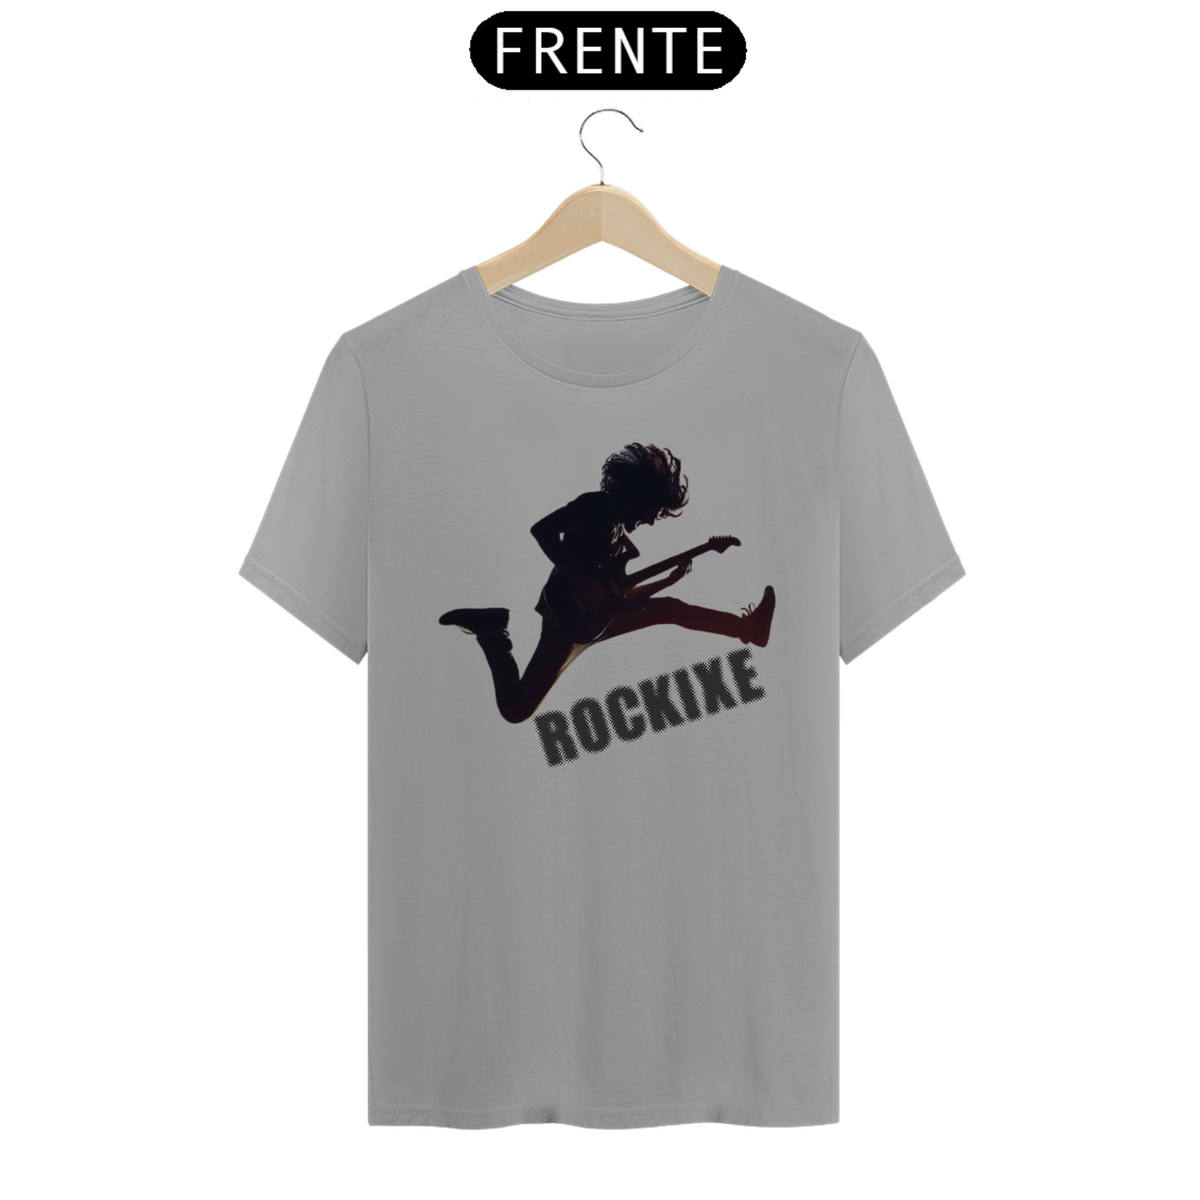 Nome do produto: Camiseta T-Shirt Qualyt ROCKIXE 